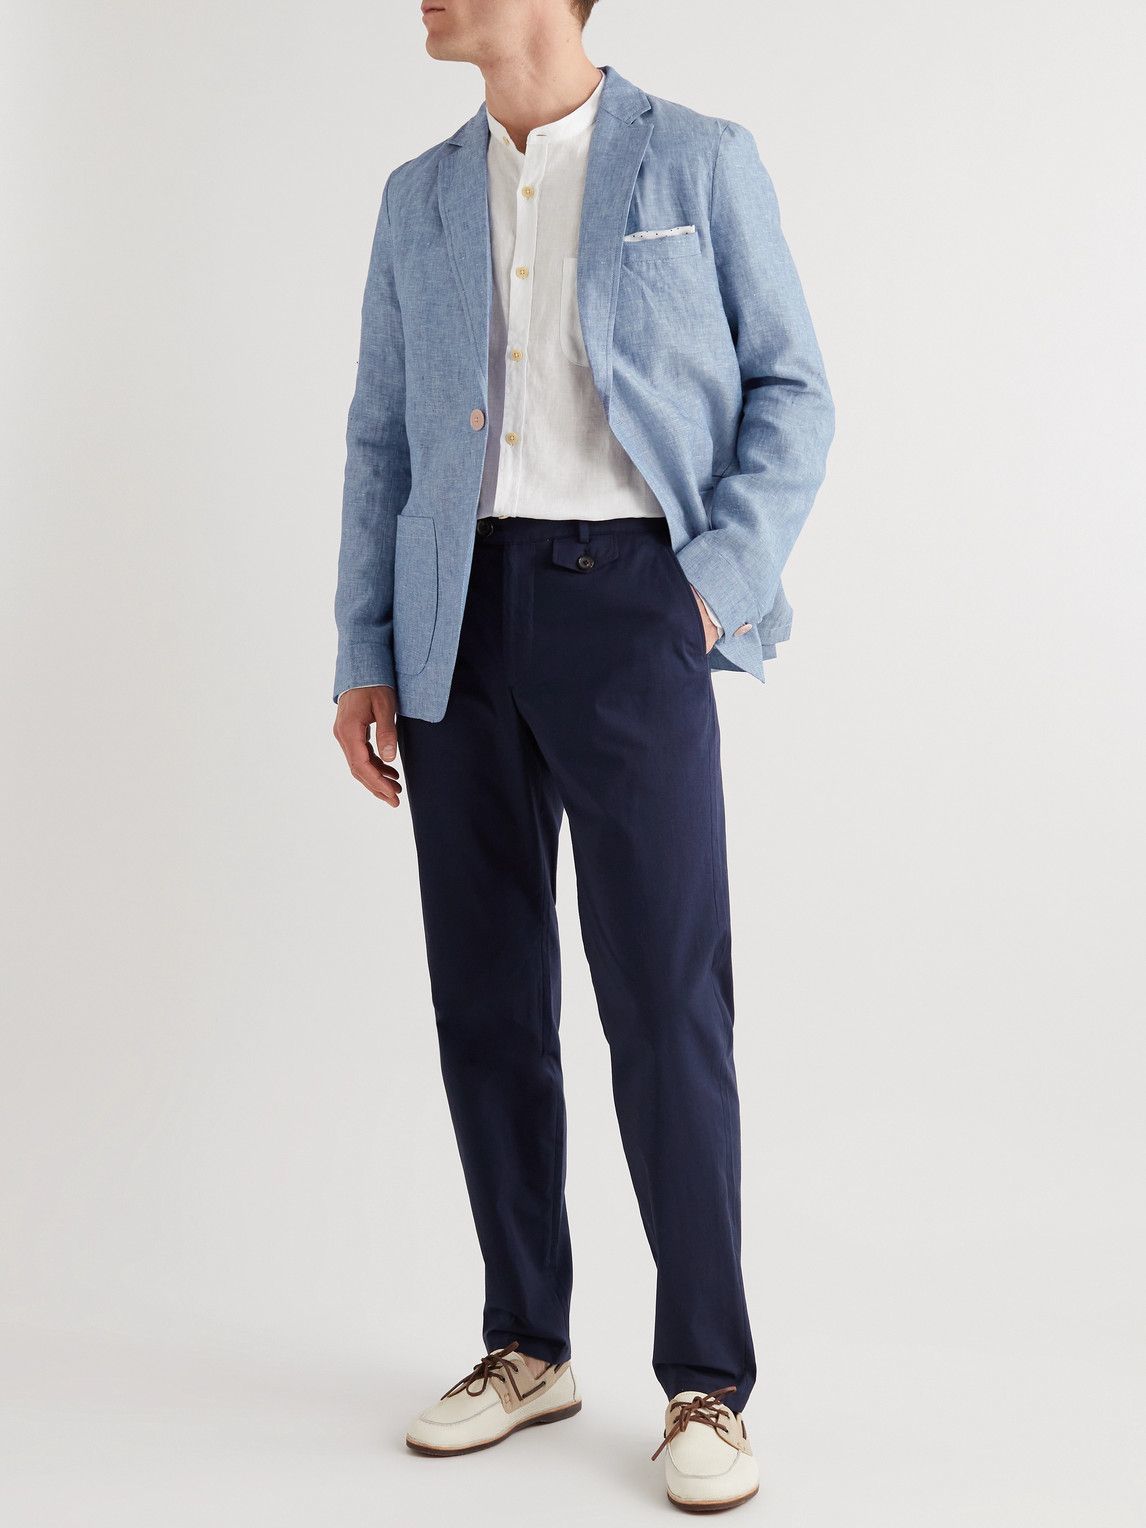 Oliver Spencer - Fairway Slim-Fit Unstructured Linen Suit Jacket - Blue